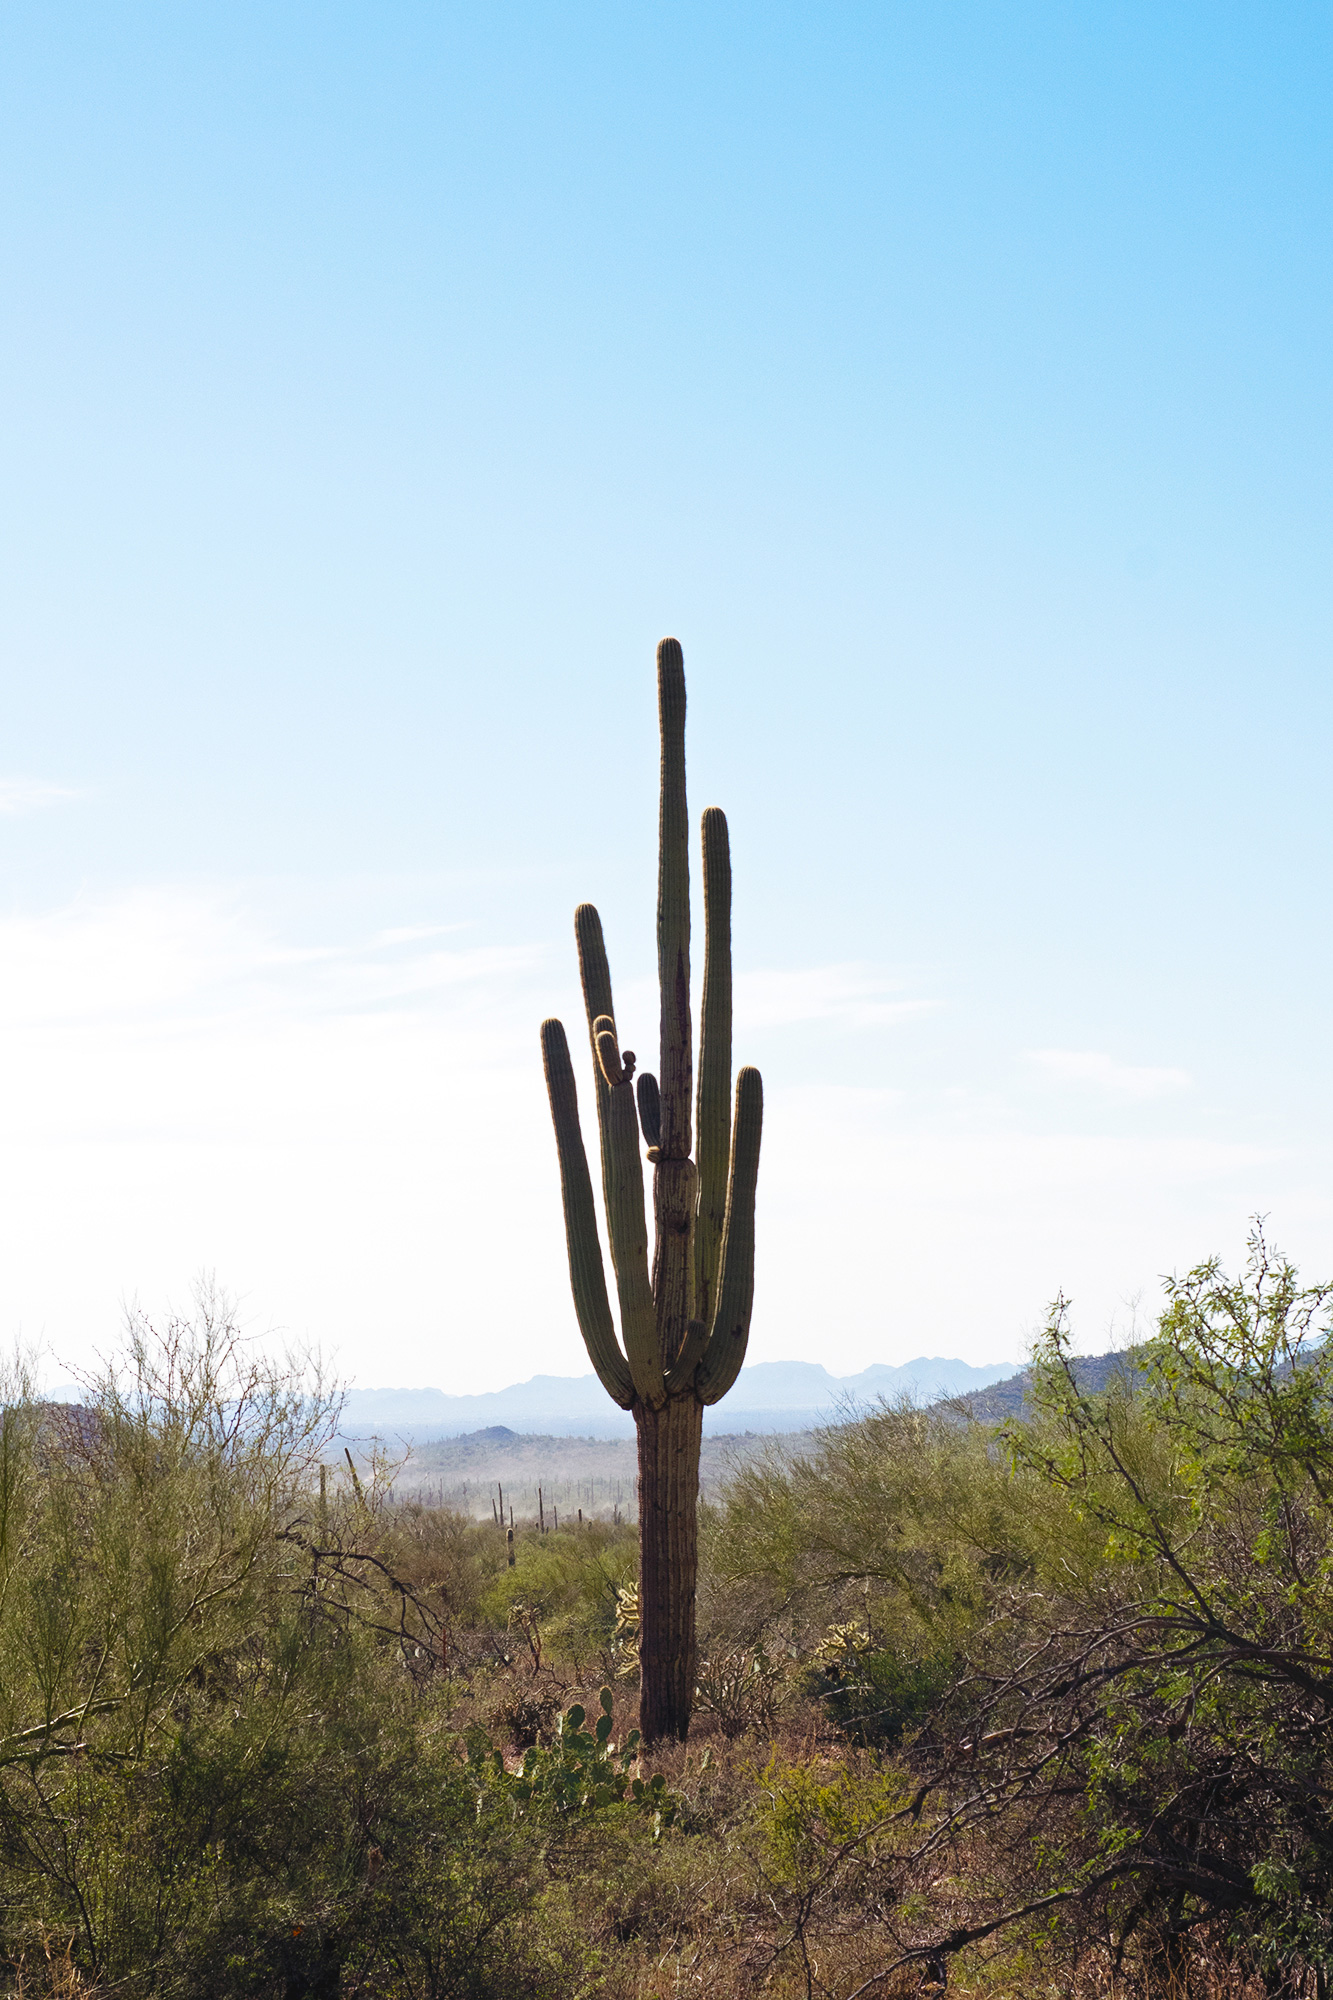 A lone cactus rises above a bleak landscape.